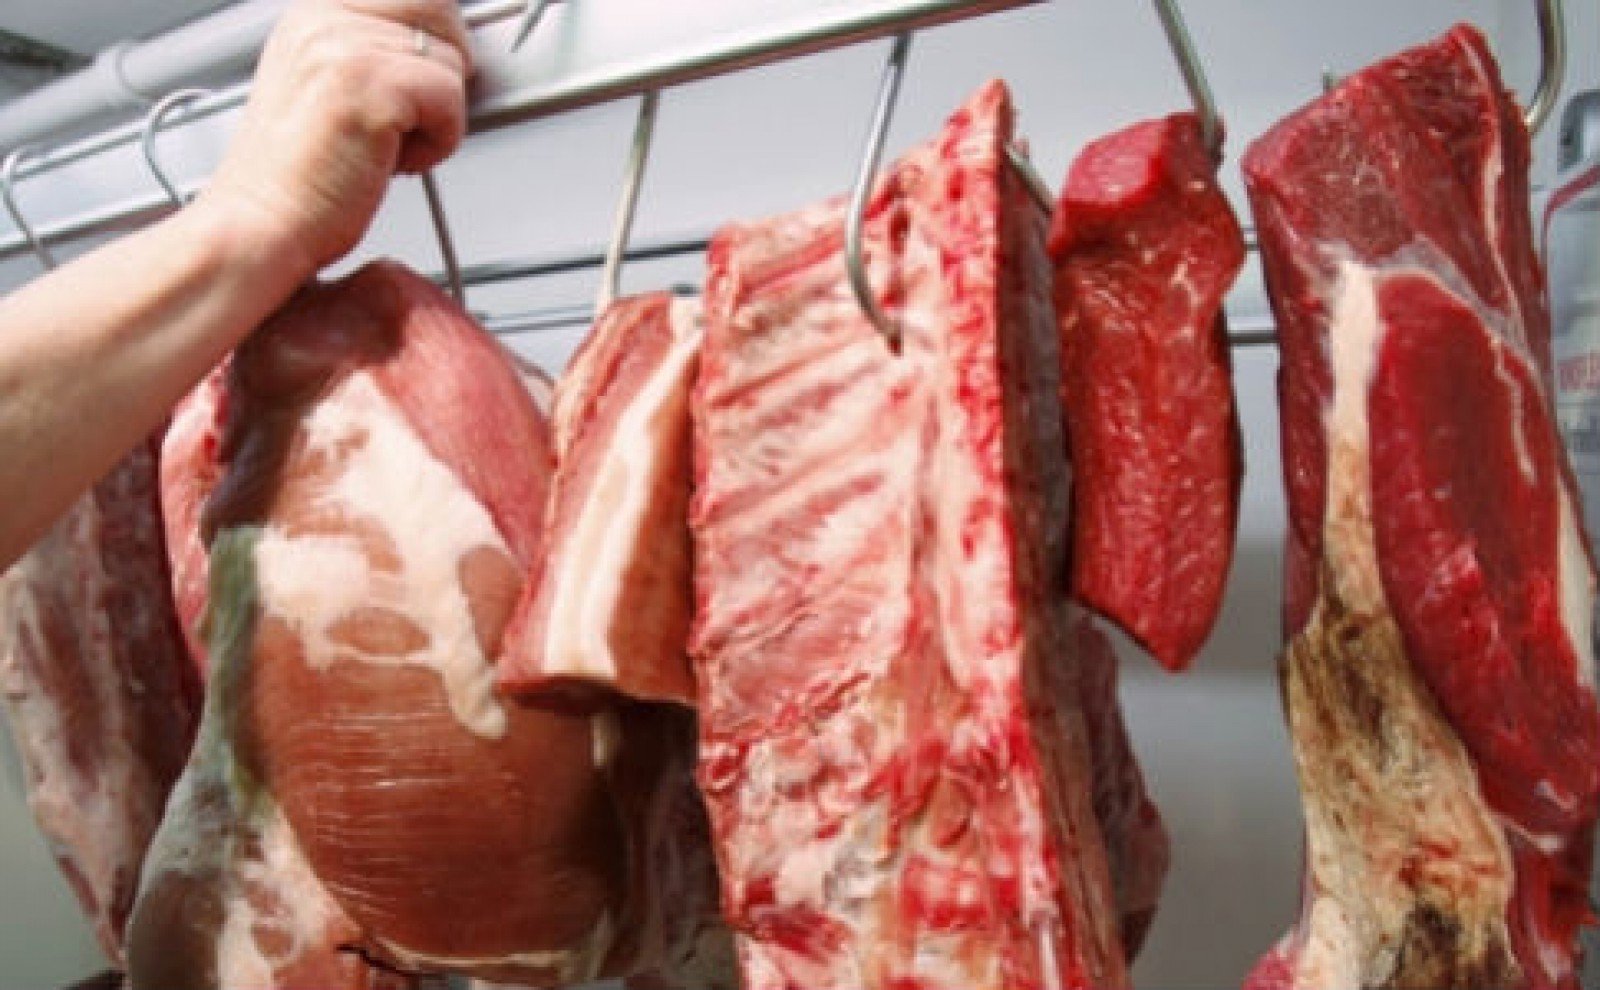  Dosare penale pentru cei care au adus în ţară produse din carne infectată cu pesta porcină